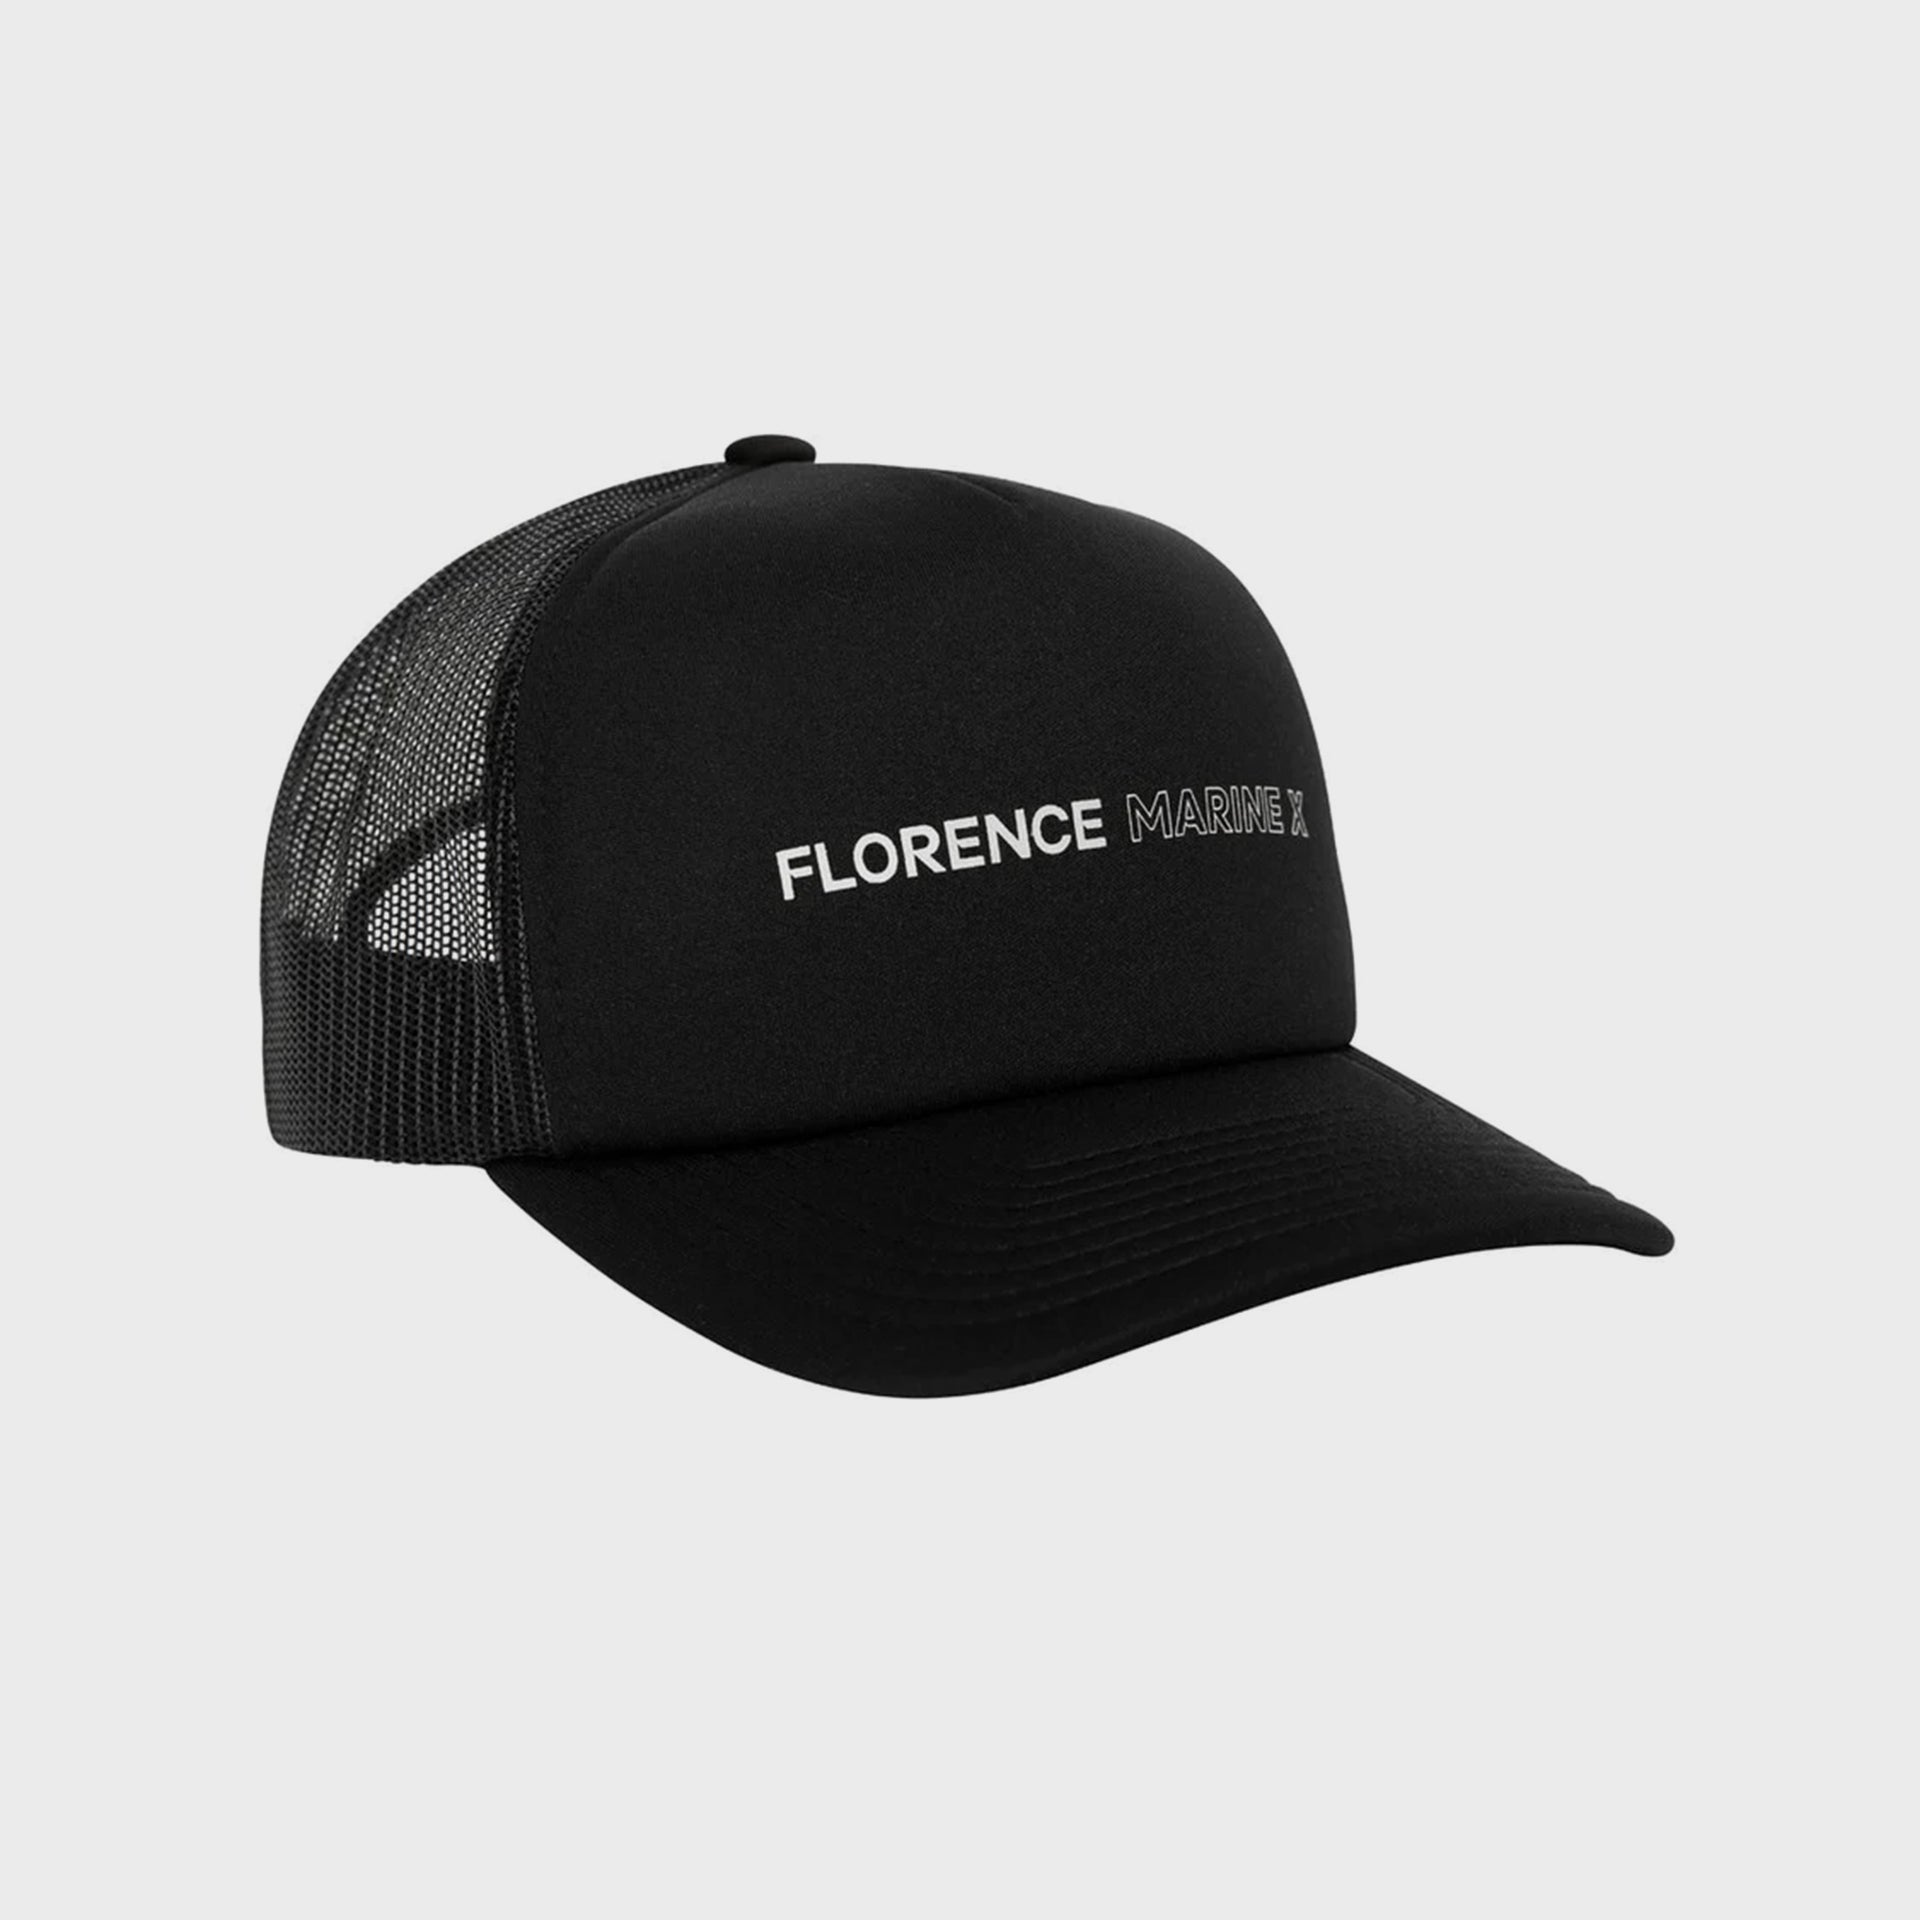 Foam Trucker Hat - Mens Hat - One Size - Black - ManGo Surfing